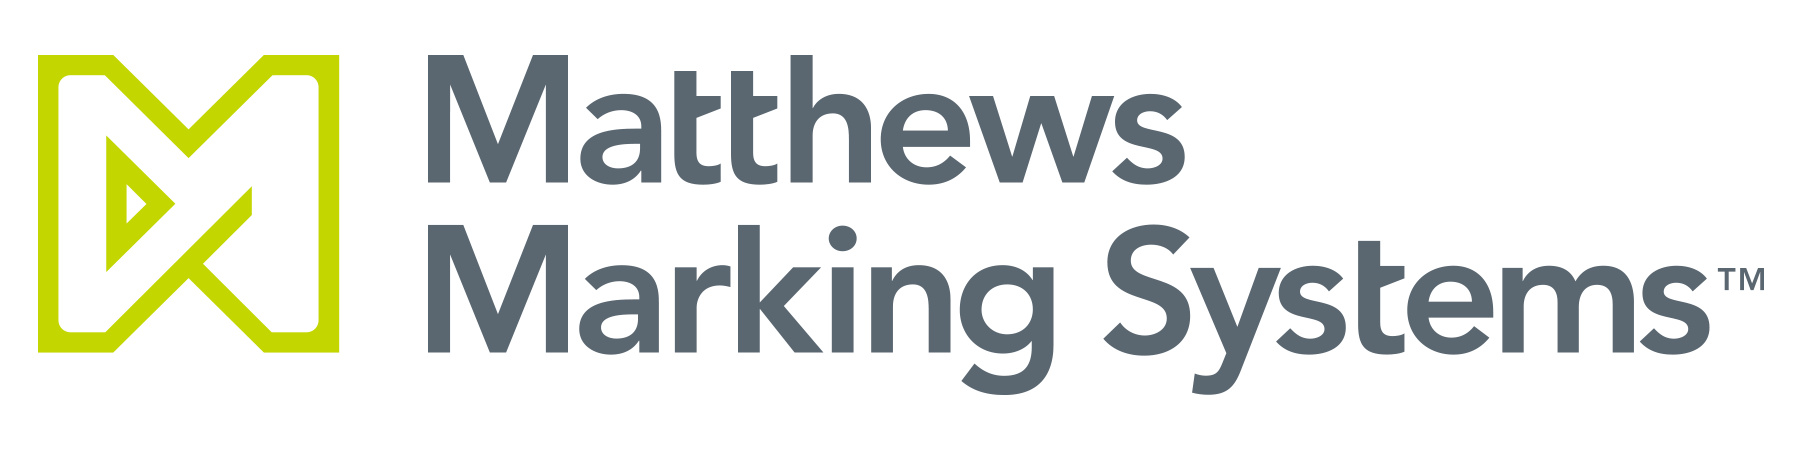 Résultat de recherche d'images pour "matthews logo printing"